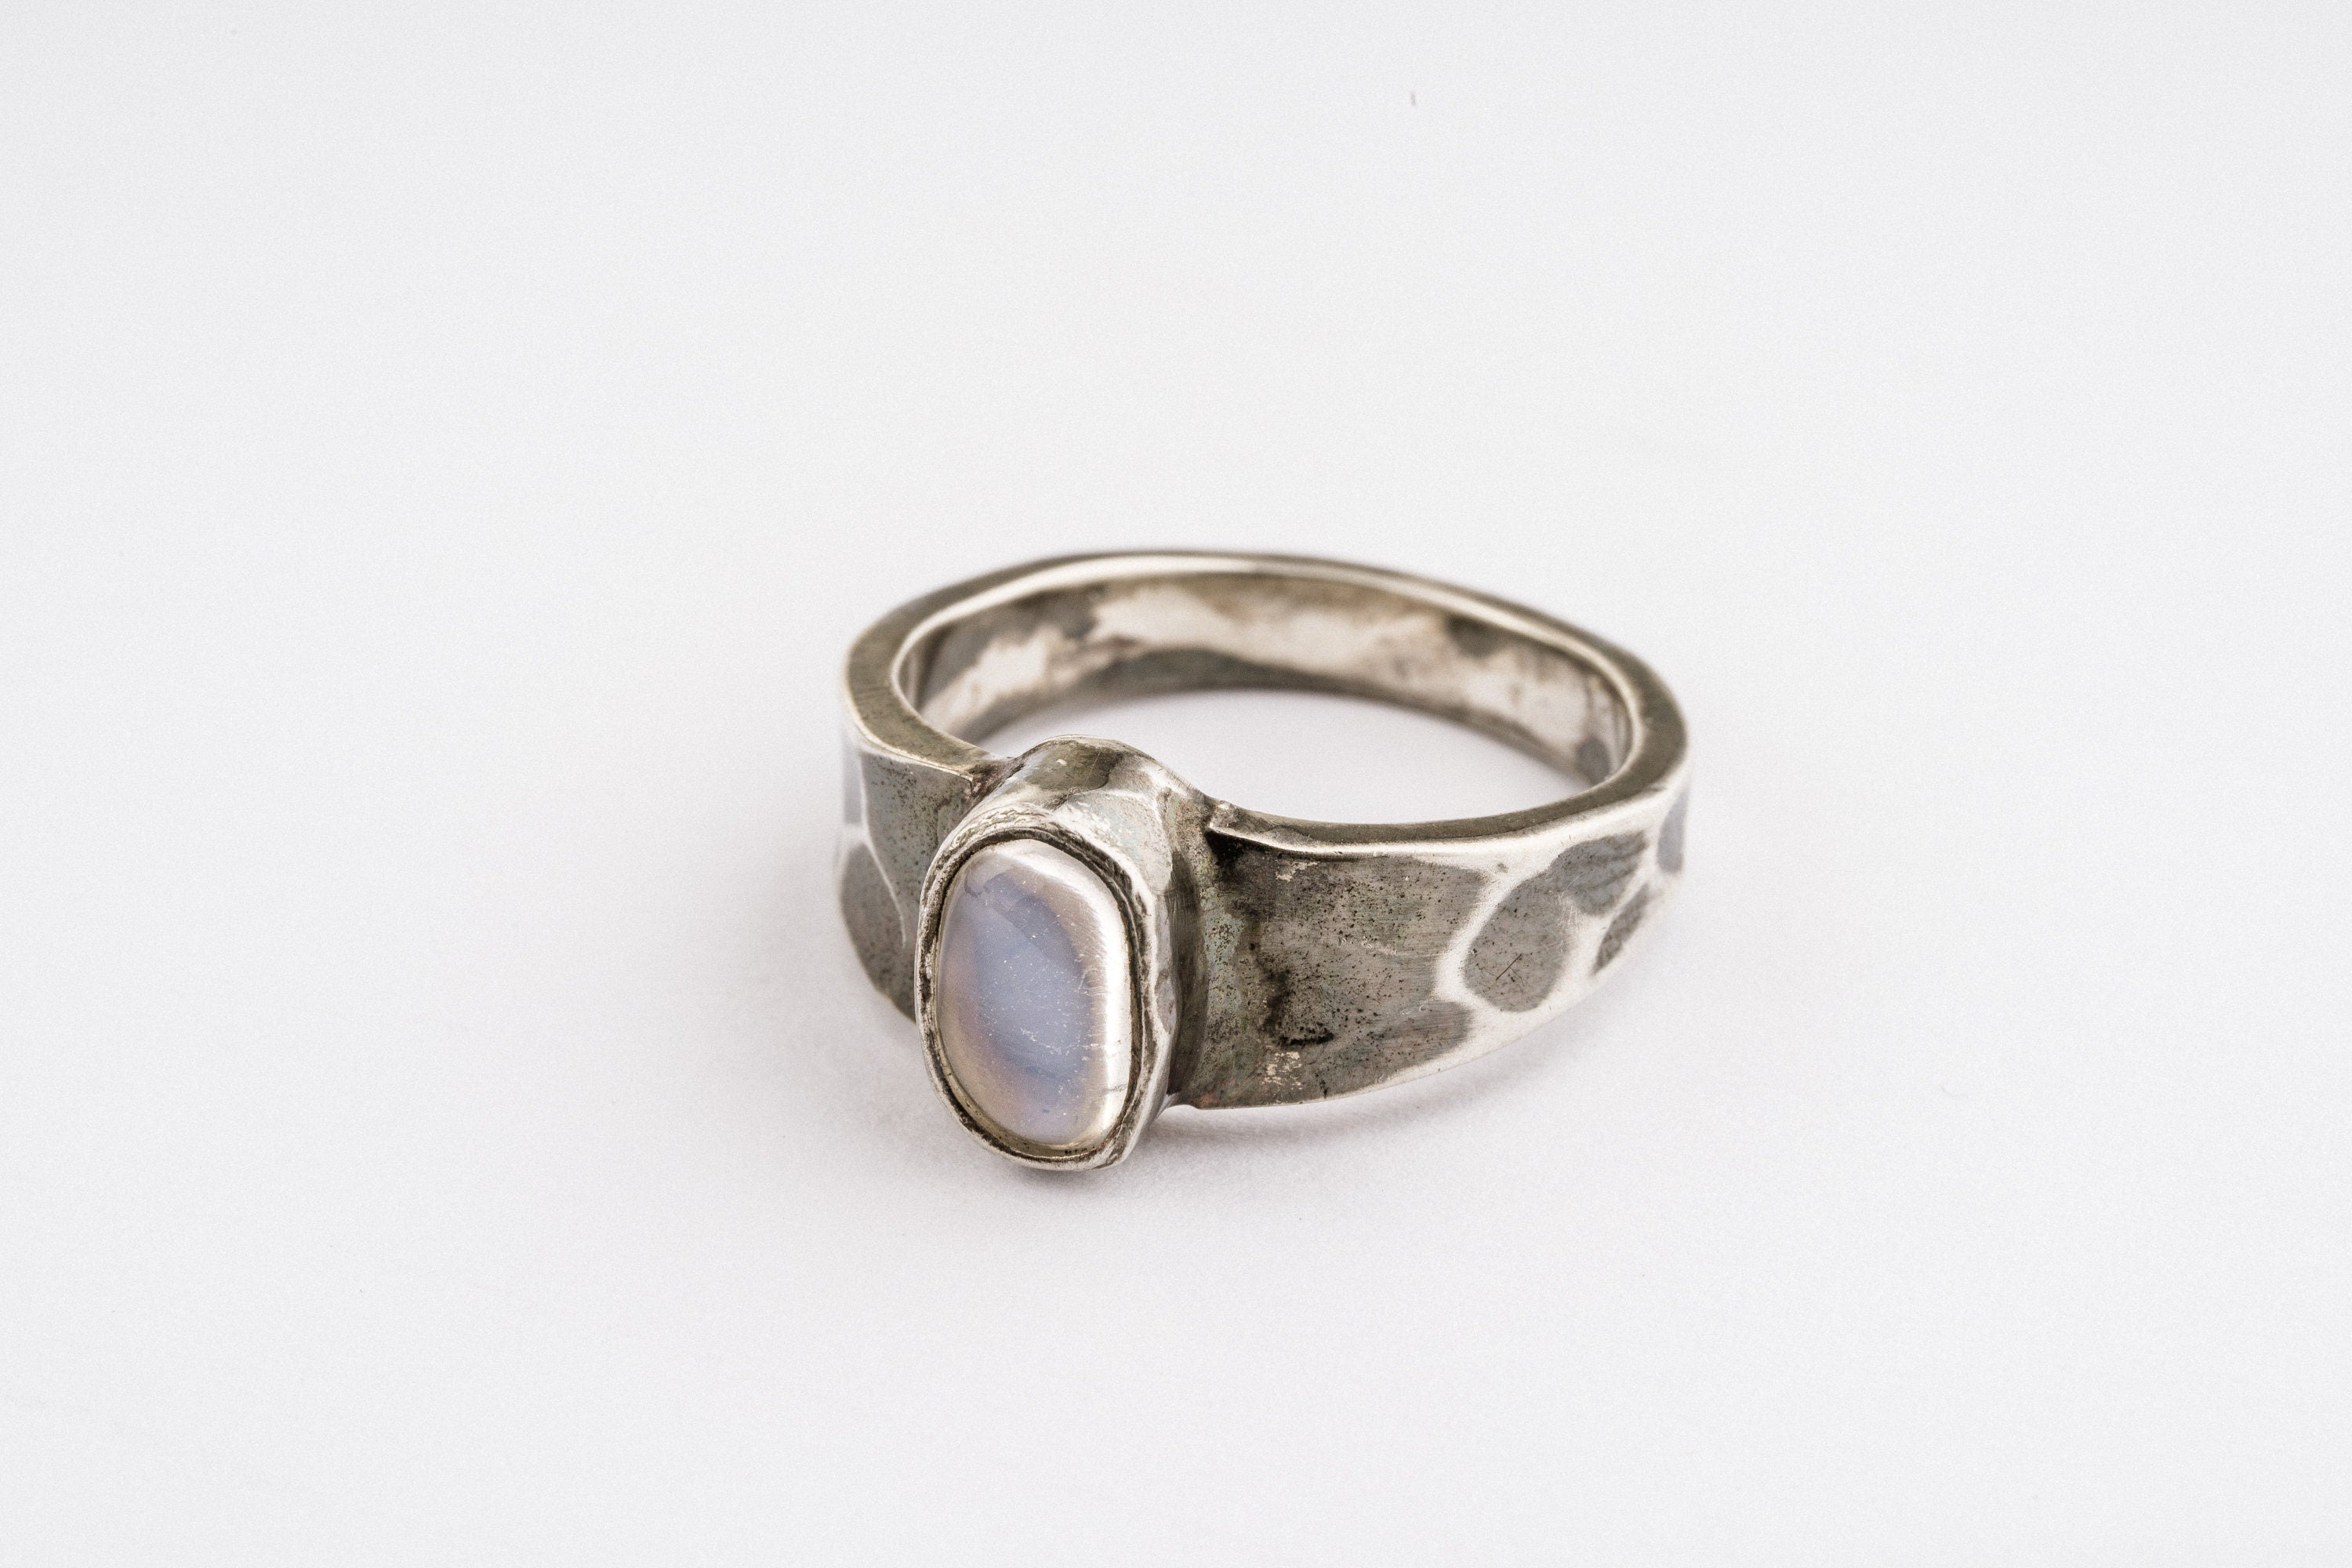 Celestial Elegance - High-Grade Cat's Eye Moonstone - Unisex/Men - Size 5.5 US - Large Sterling Silver Ring